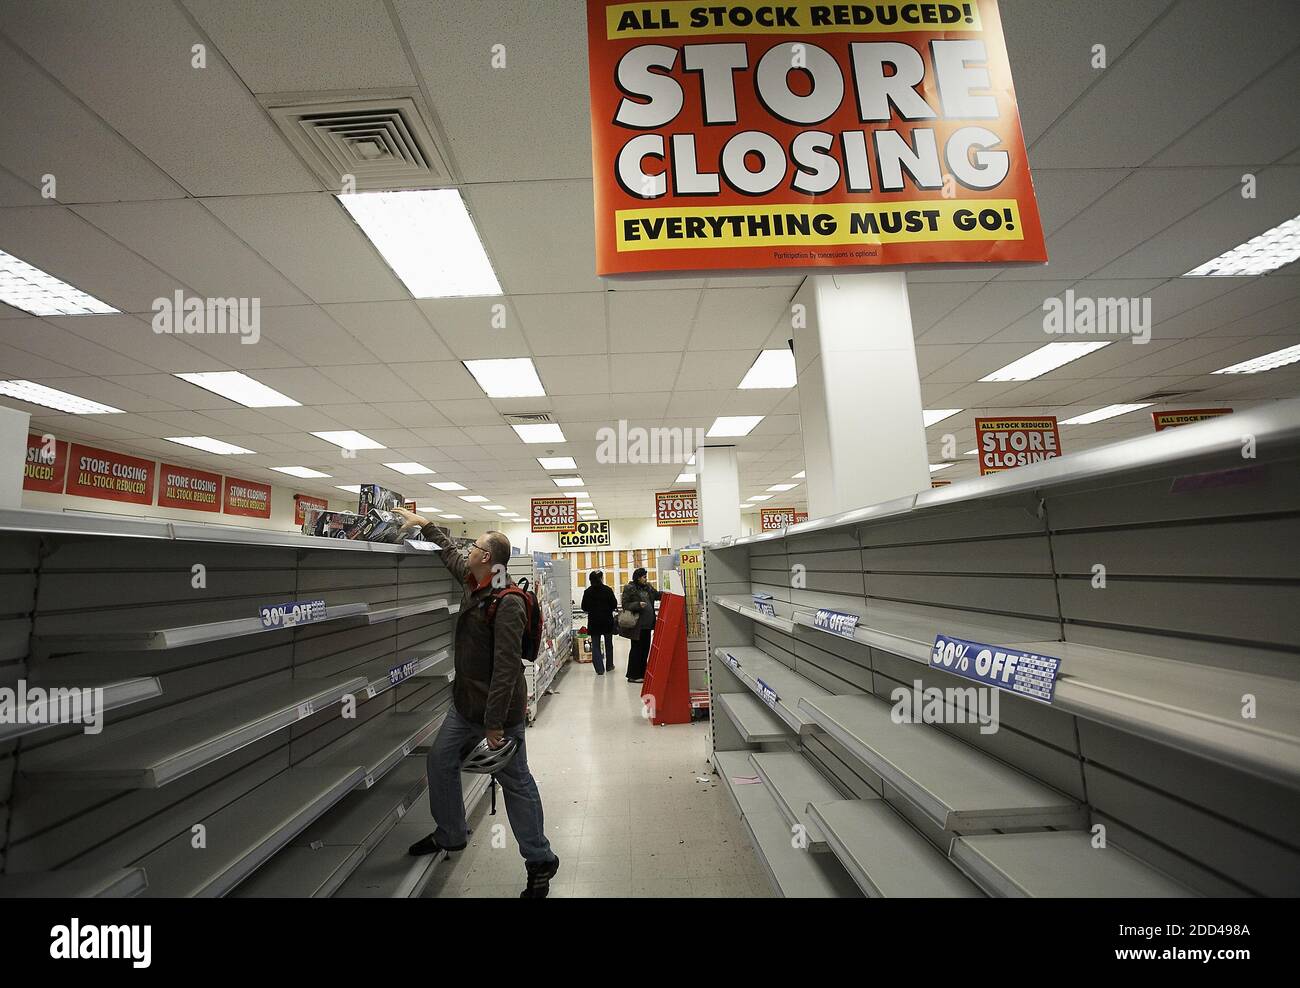 GRAN BRETAGNA / Inghilterra / Londra /dopo anni di vendite in difficoltà, i negozi di Woolworths finalmente crollarono in amministrazione. Foto Stock